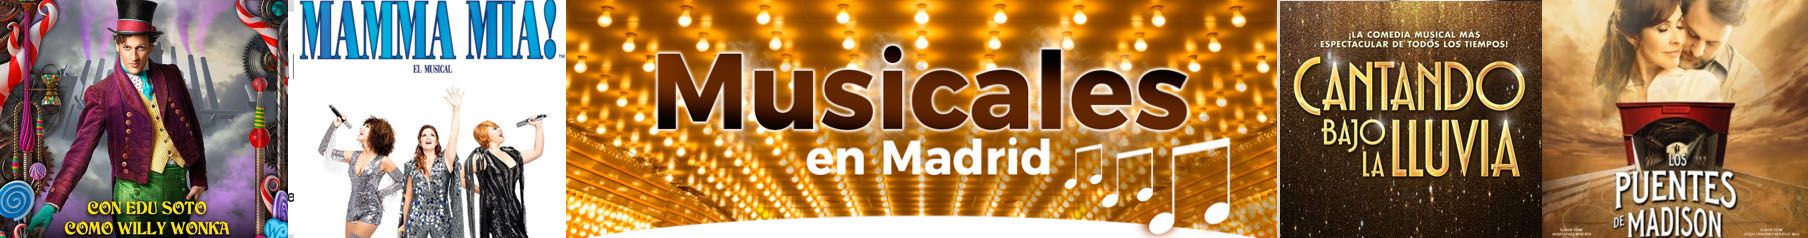 MUSICALES EN MADRID